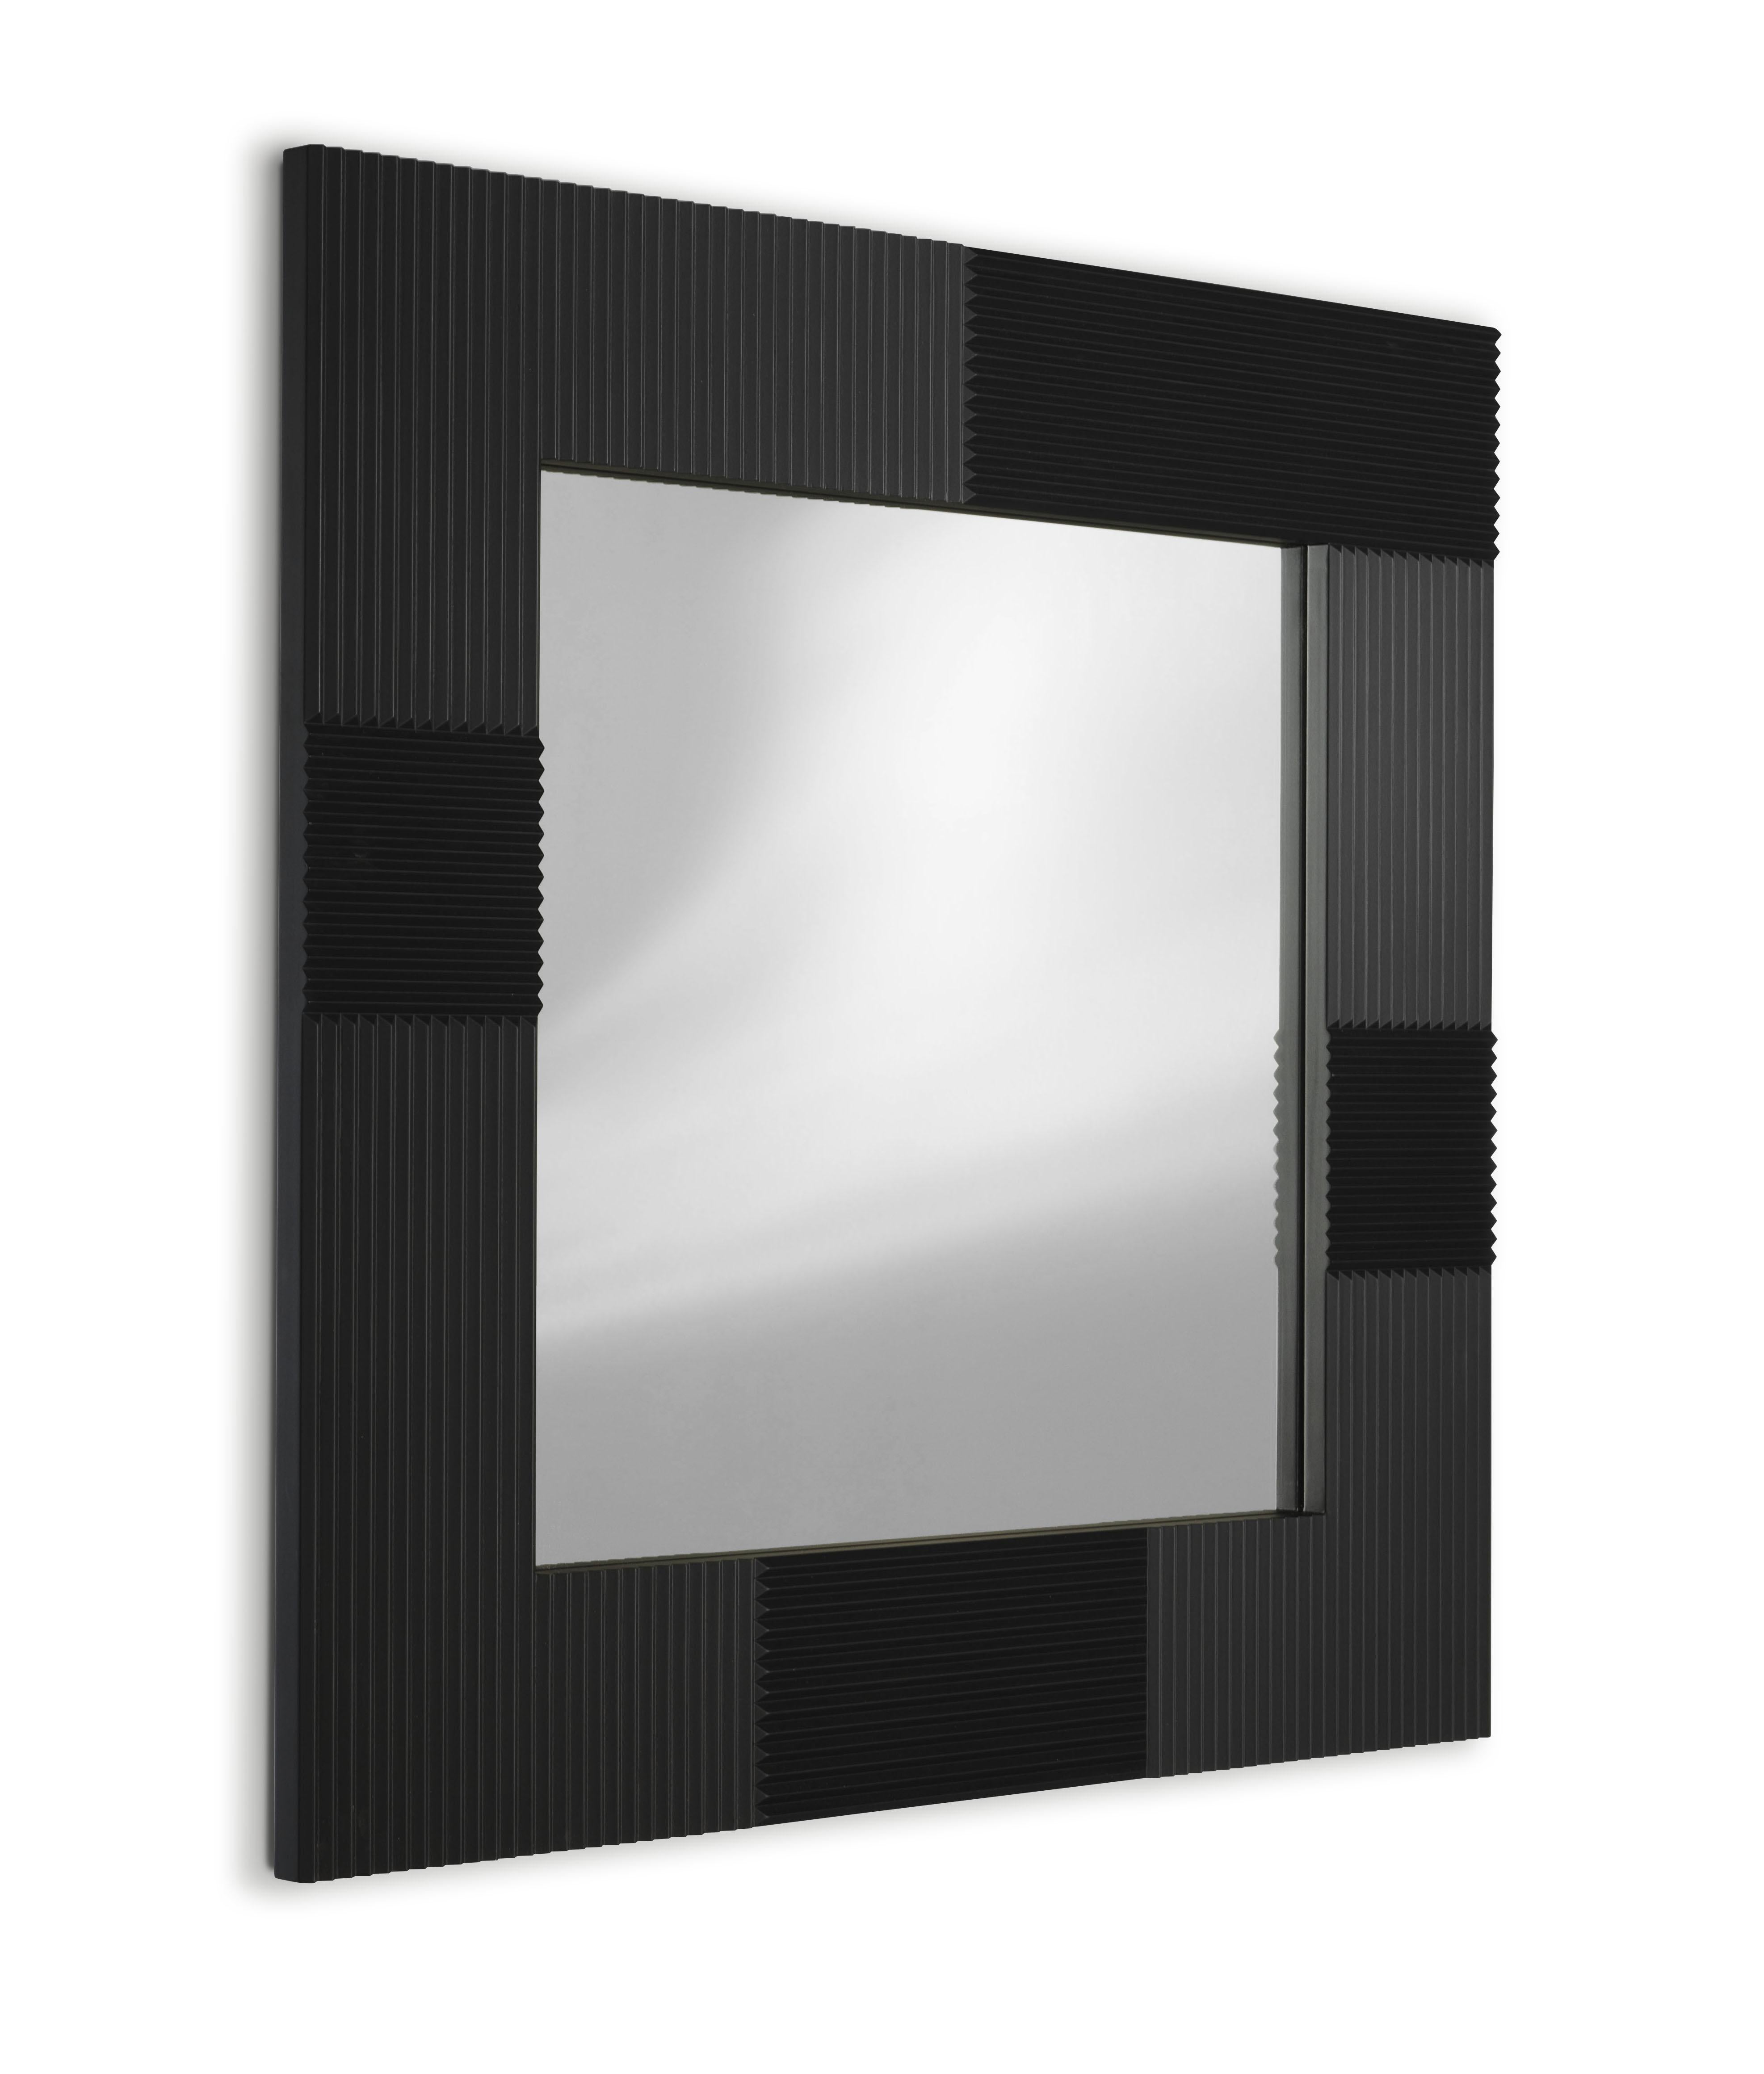 FIELDS wall mirror In New Condition For Sale In Azzano Decimo, PN